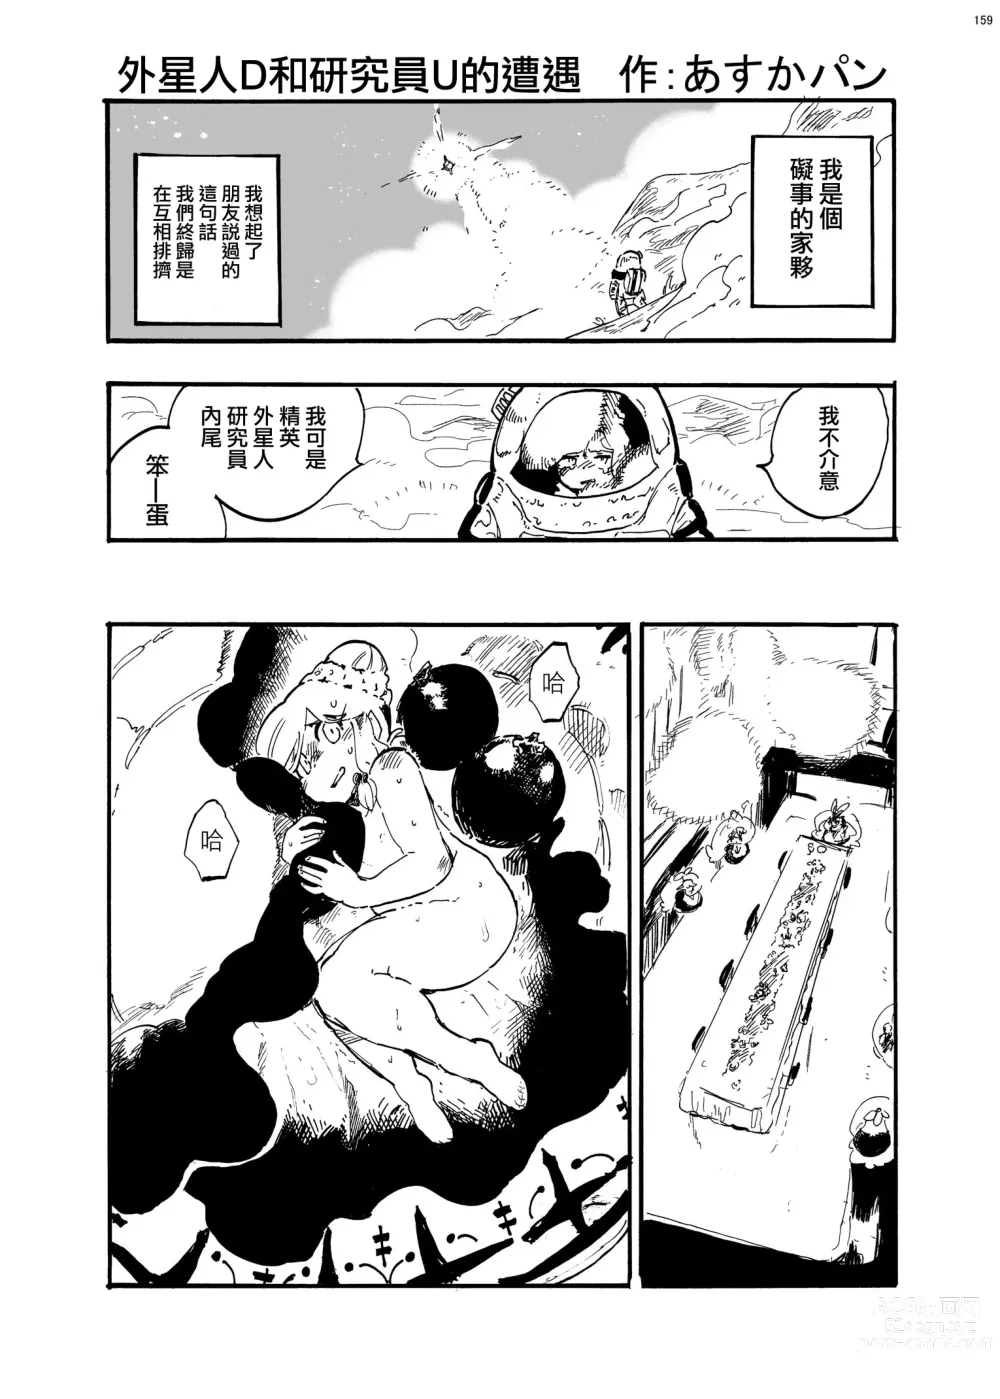 Page 2 of manga 外星人D和研究員U的遭遇